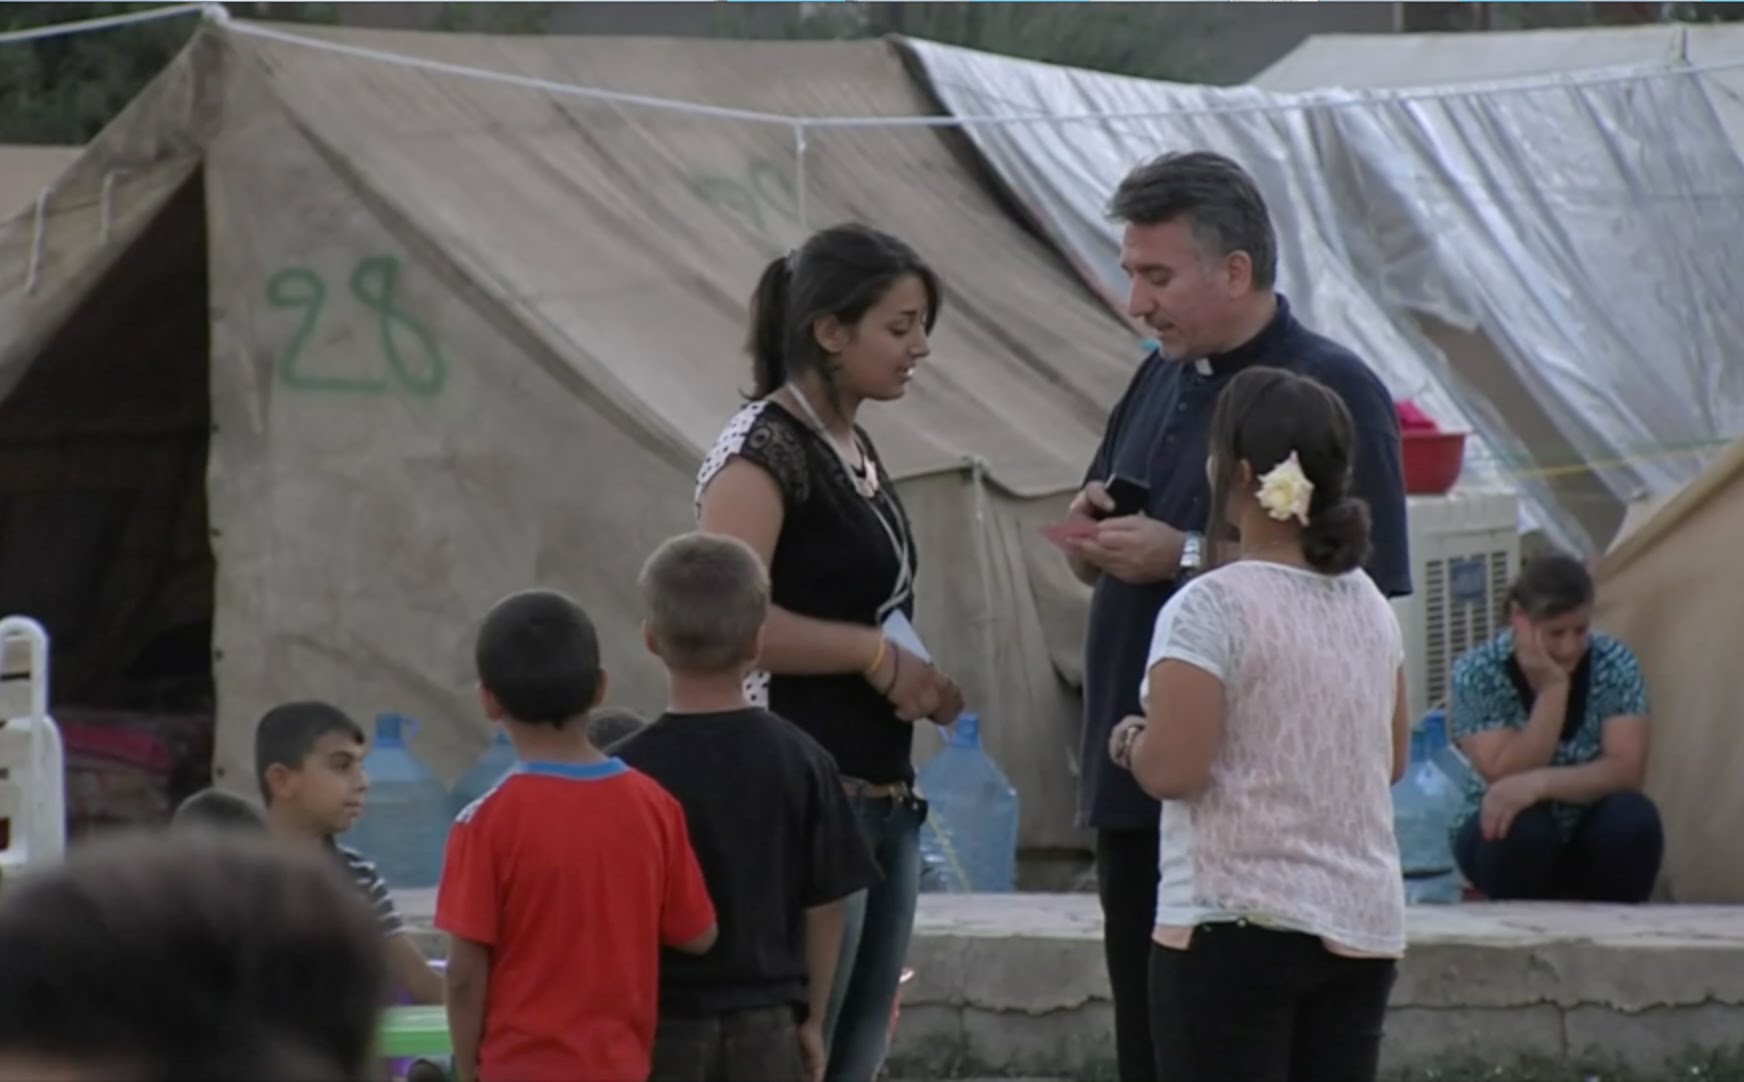 Iglesia de campaña con los refugiados en origen © Youtube